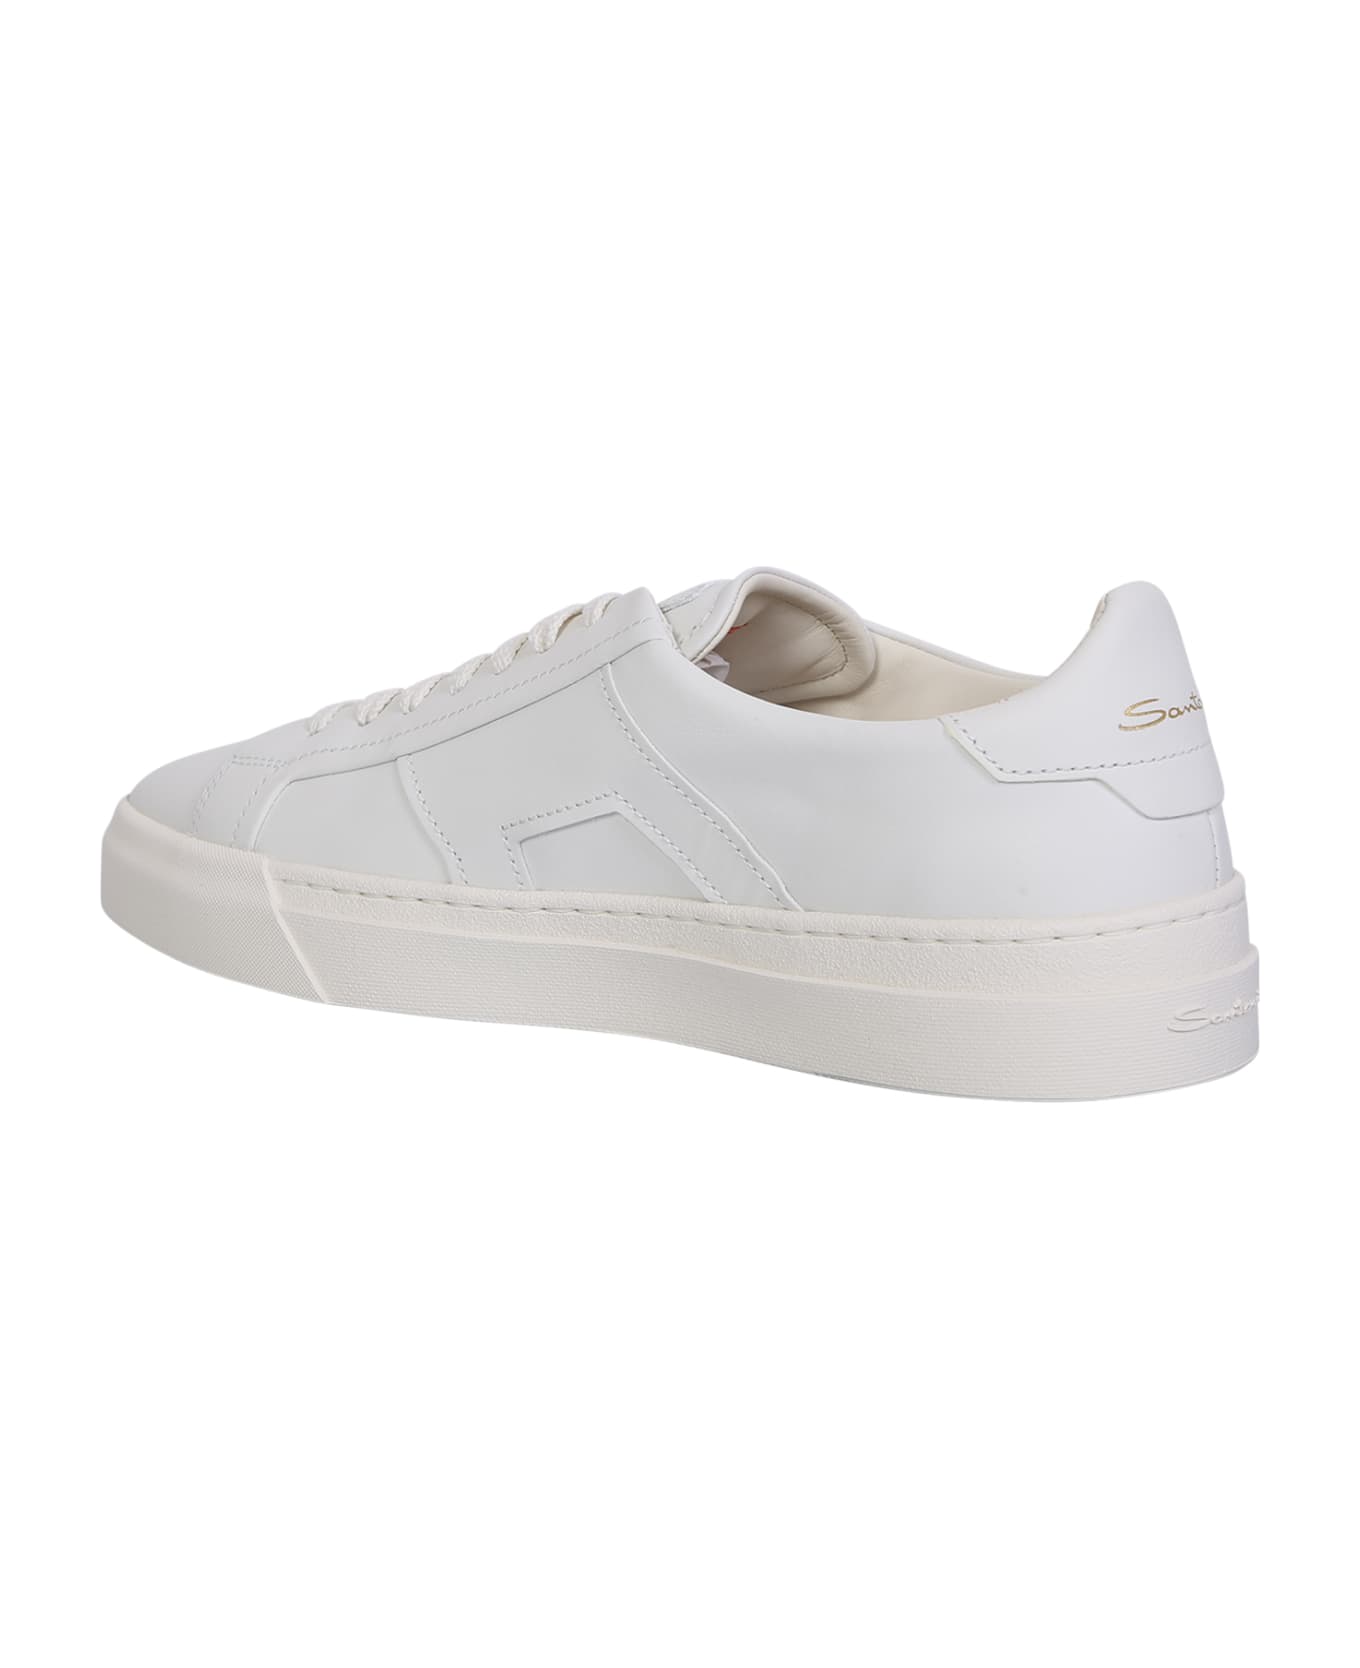 Santoni Sneakers Dbs - White